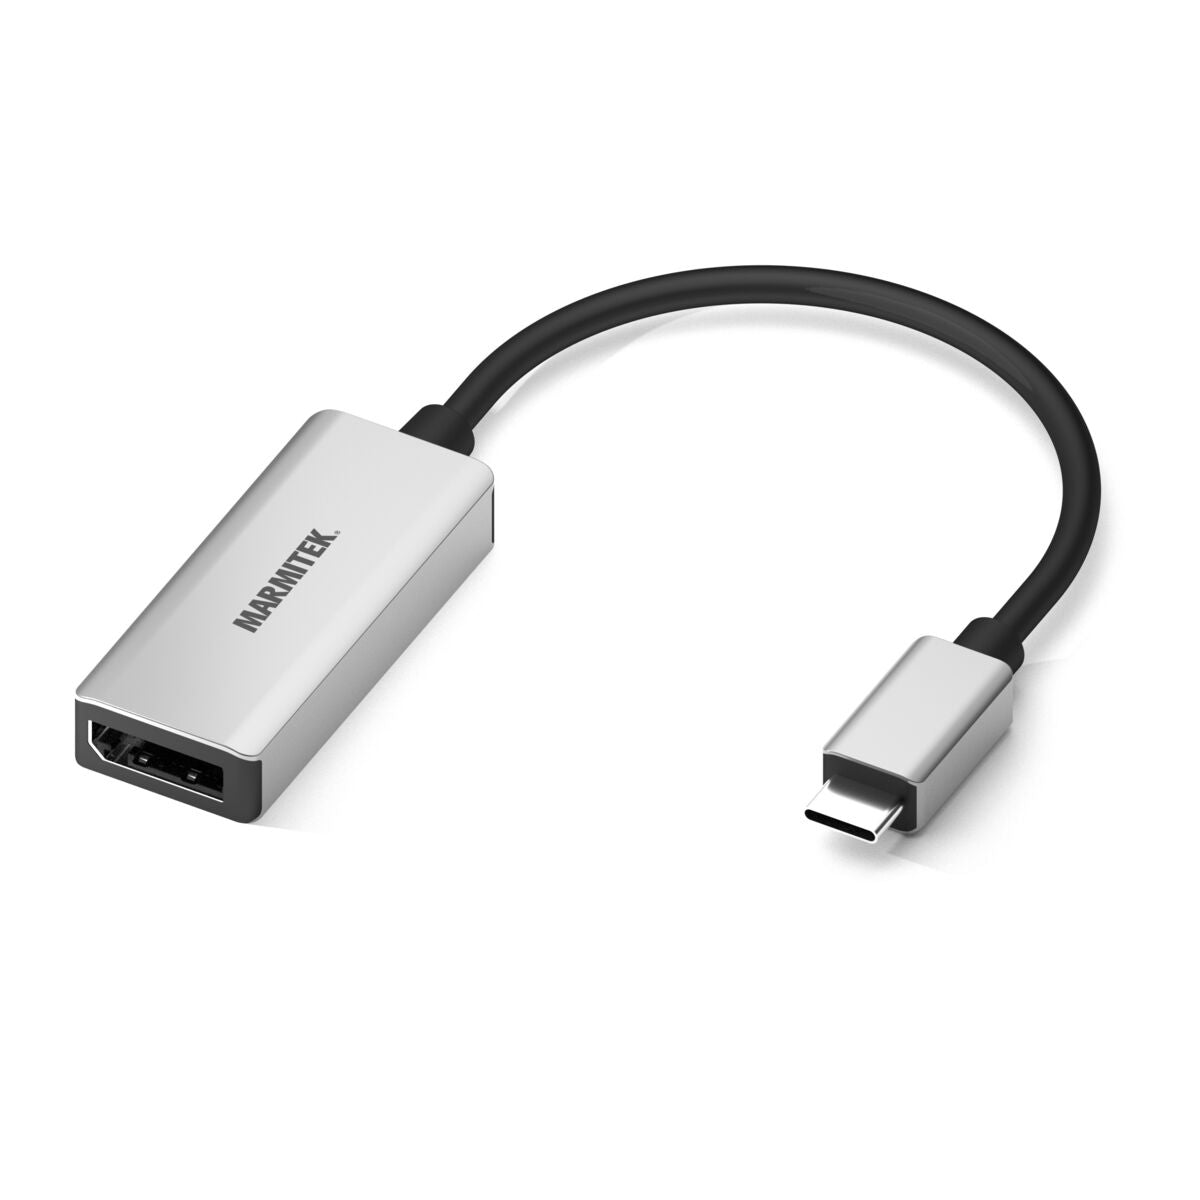 Comprar adaptador USB tipo C a DisplayPort?